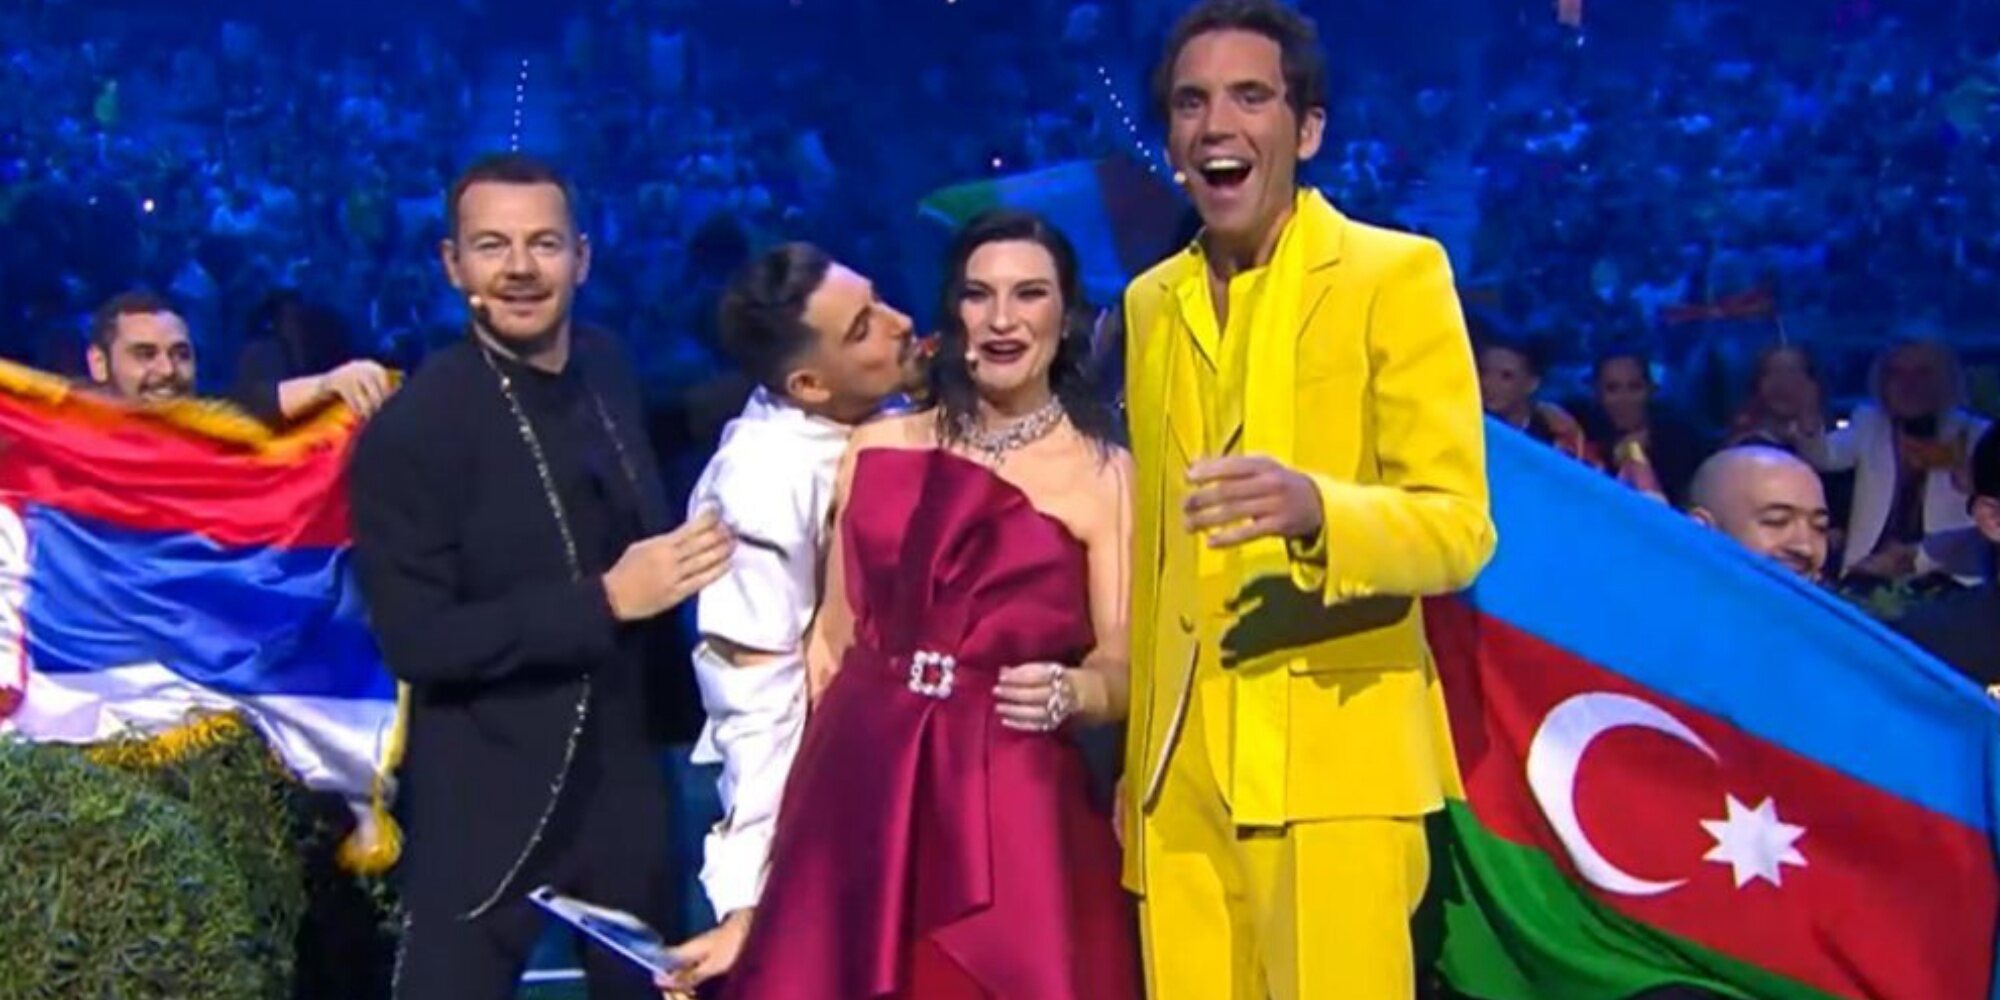 Alessandro Cattelan, Michael Ben David, Laura Pausini y Mika durante la segunda semifinal de Eurovisión 2022